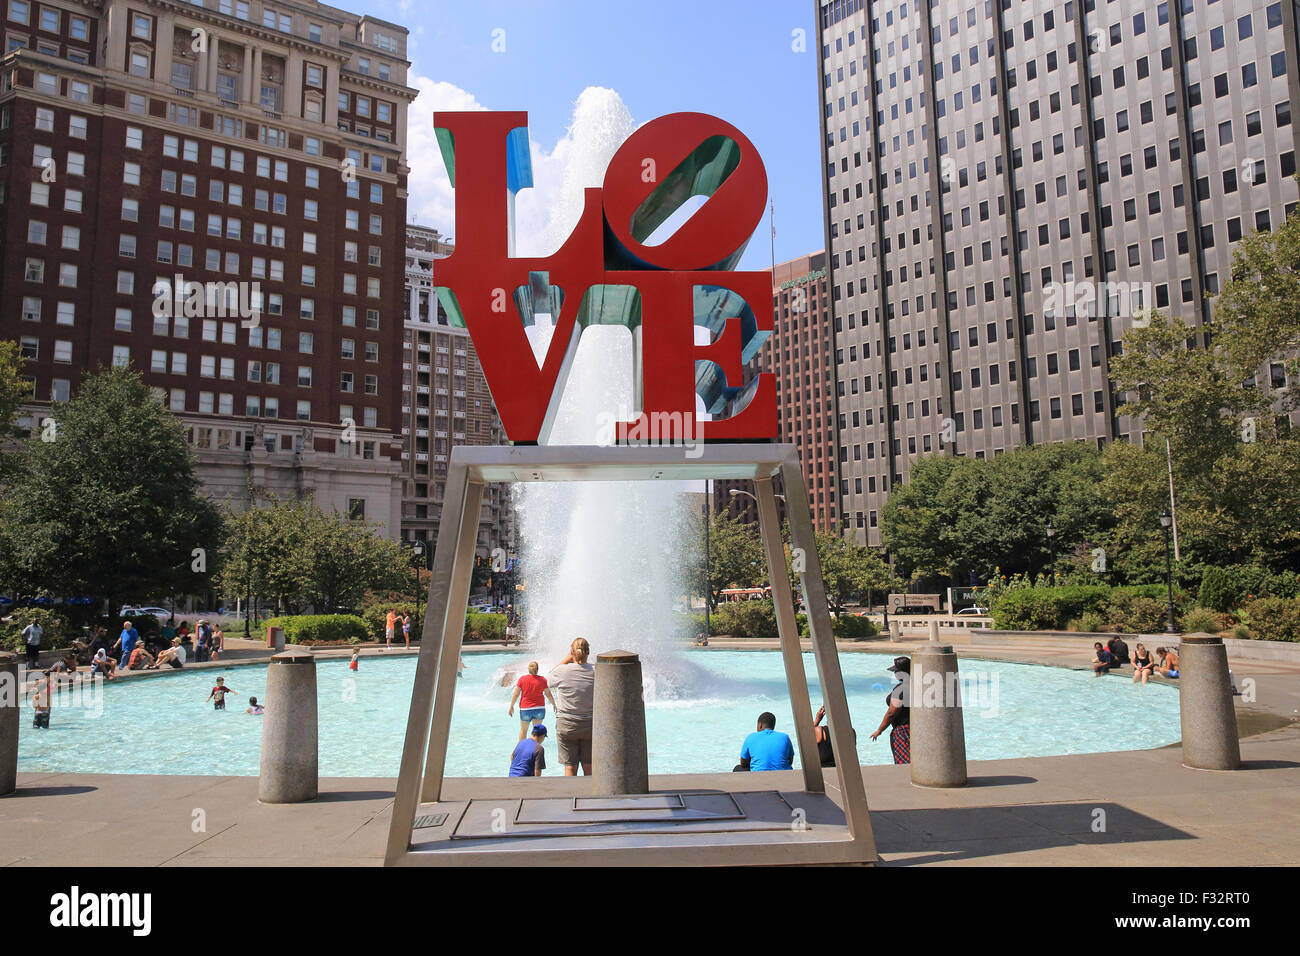 Rosso intenso amore scultura da Robert Indiana in amore Park, a Philadelphia, Pennsylvania, STATI UNITI D'AMERICA Foto Stock